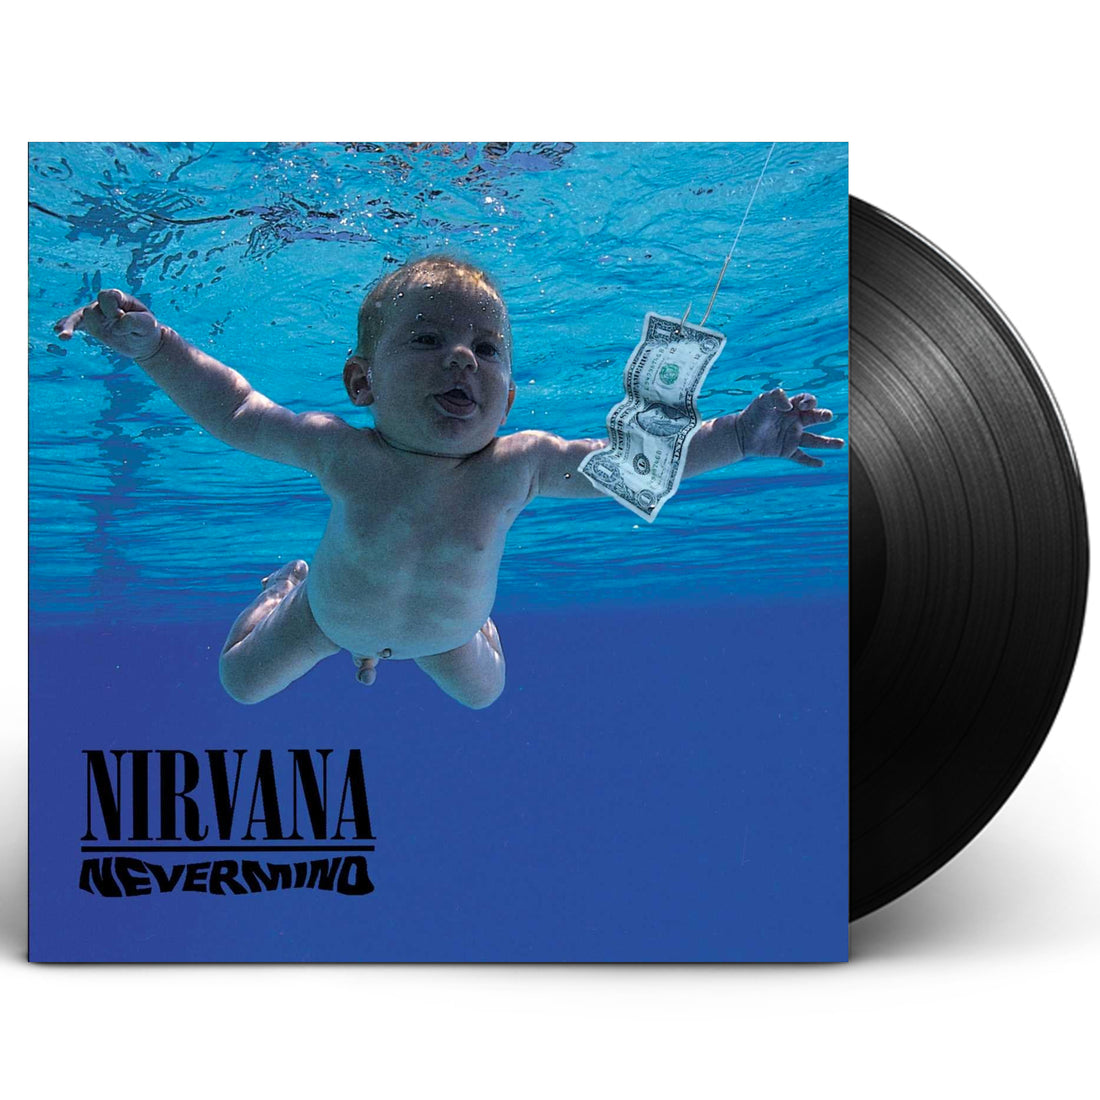 Nirvana "Nevermind" LP Vinyl